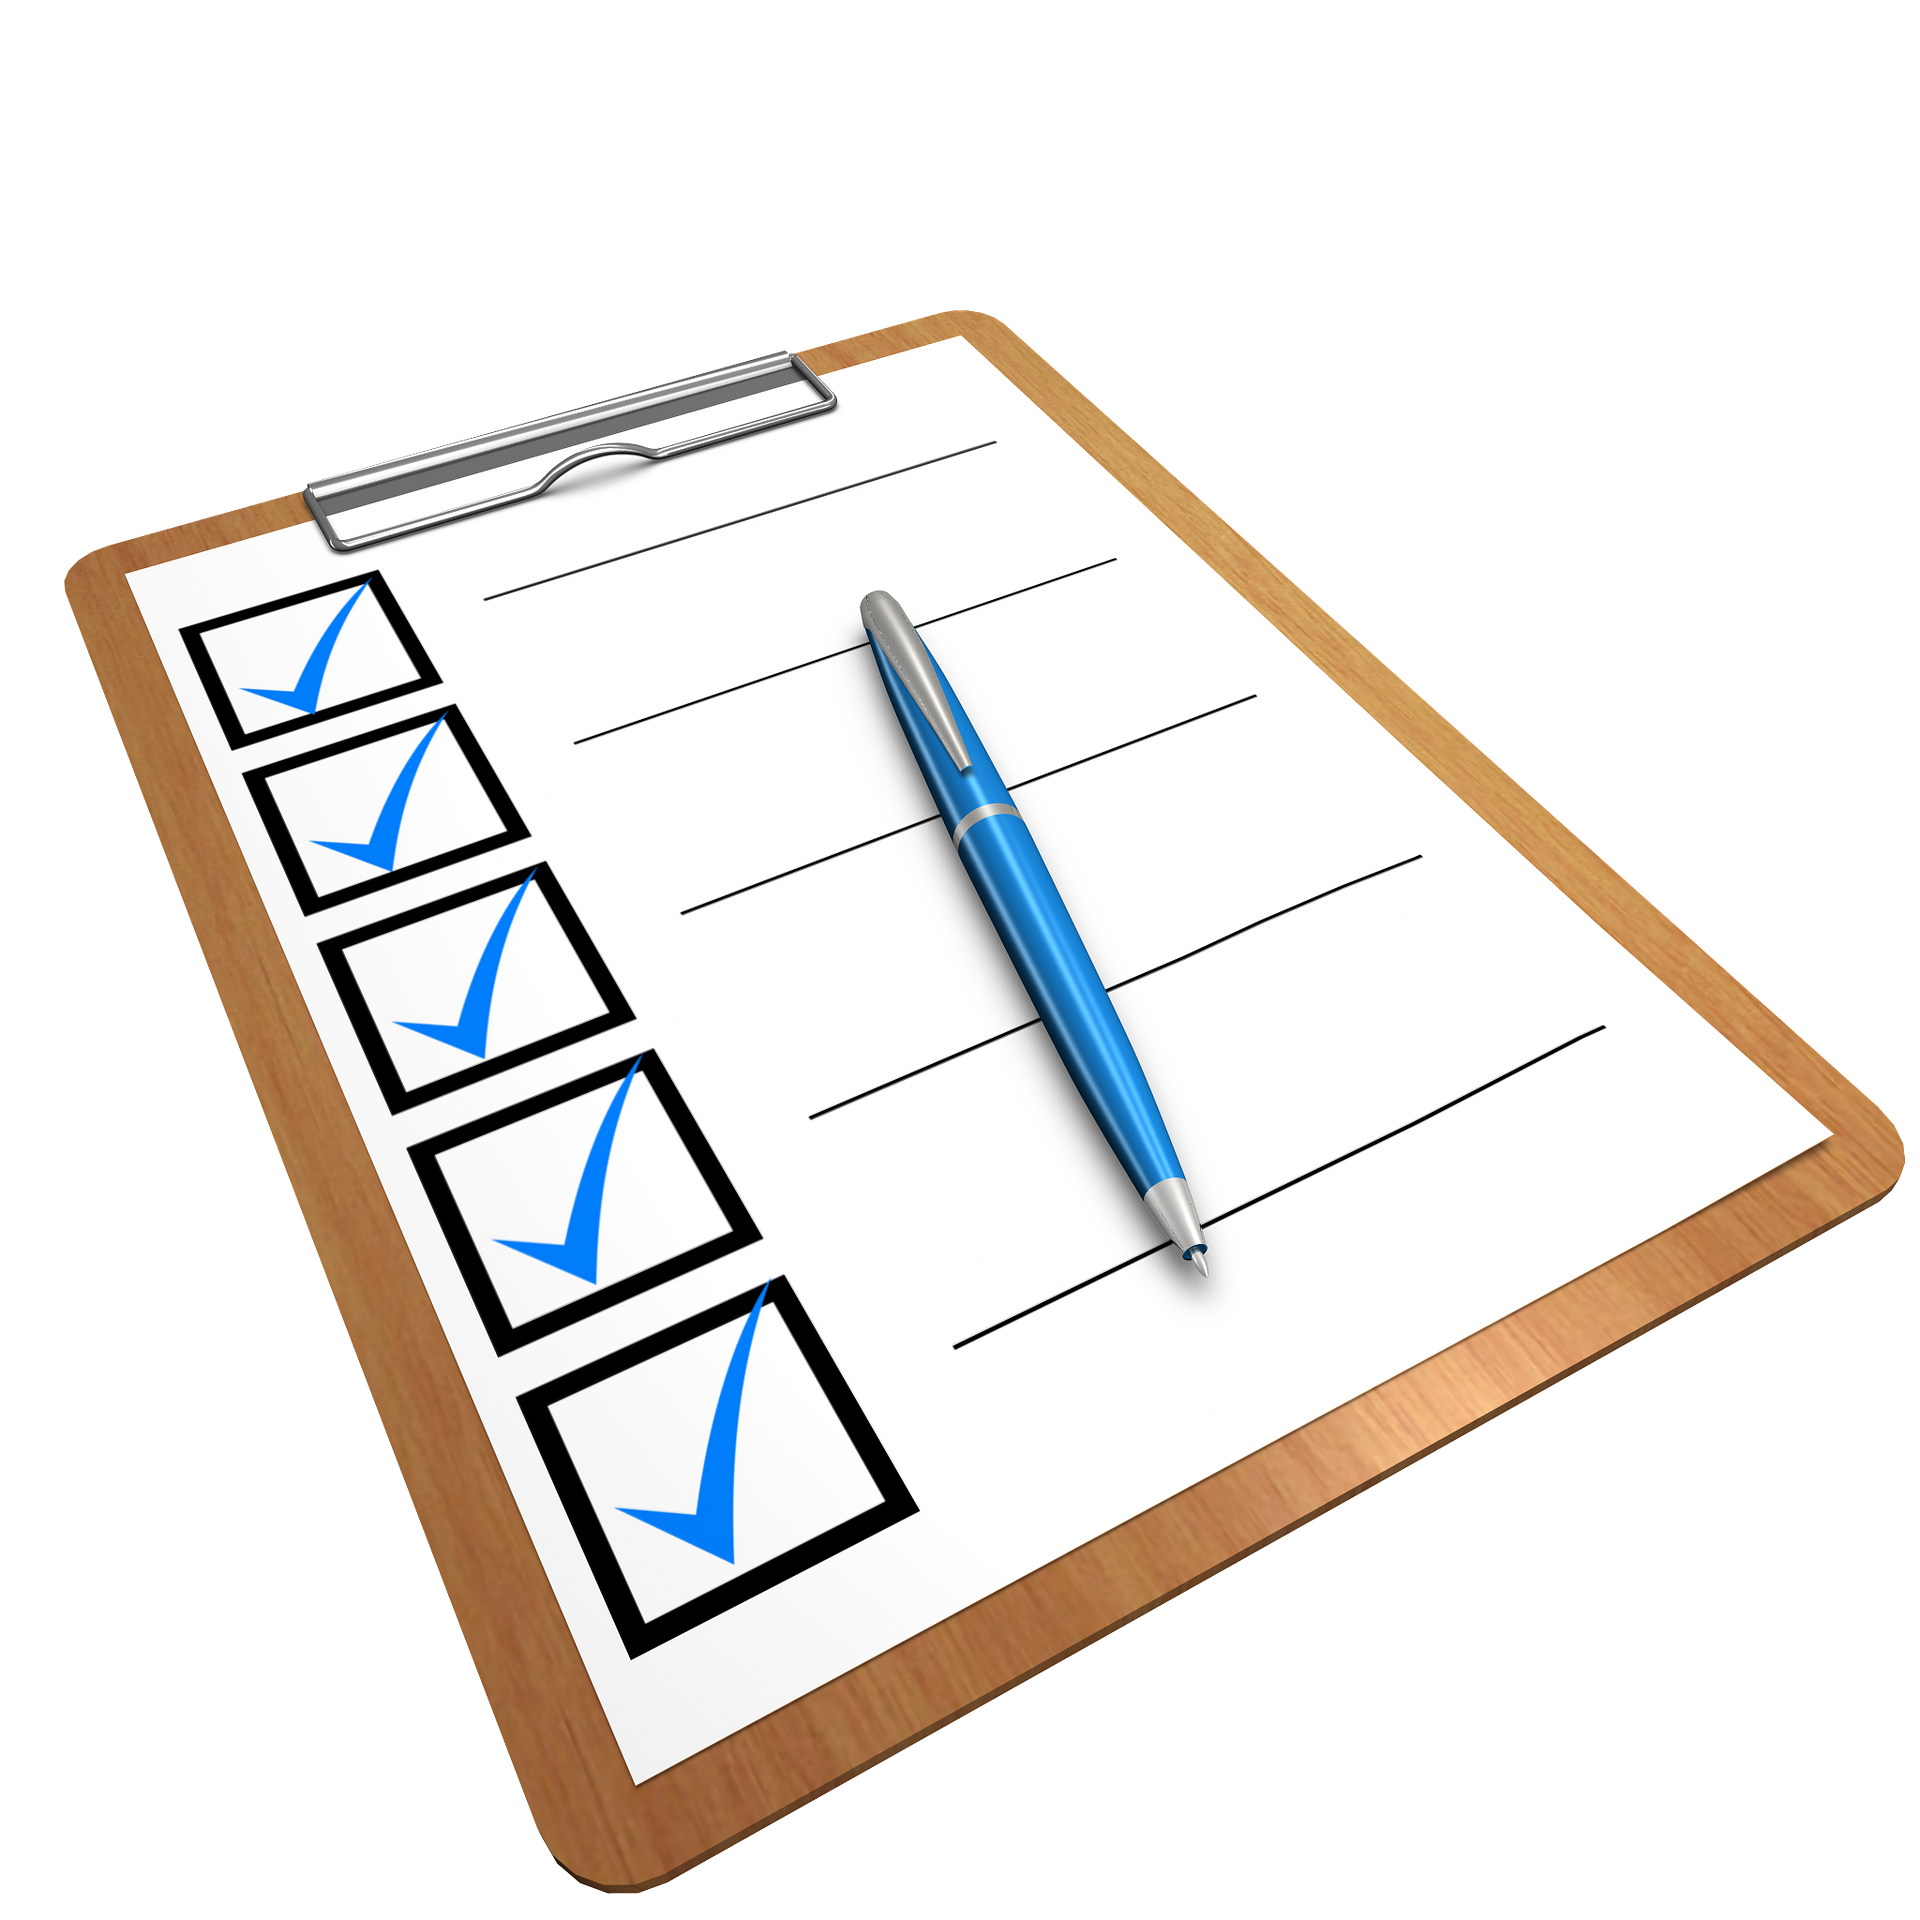 Checkliste (c) Bild von Shahid Abdullah auf Pixabay